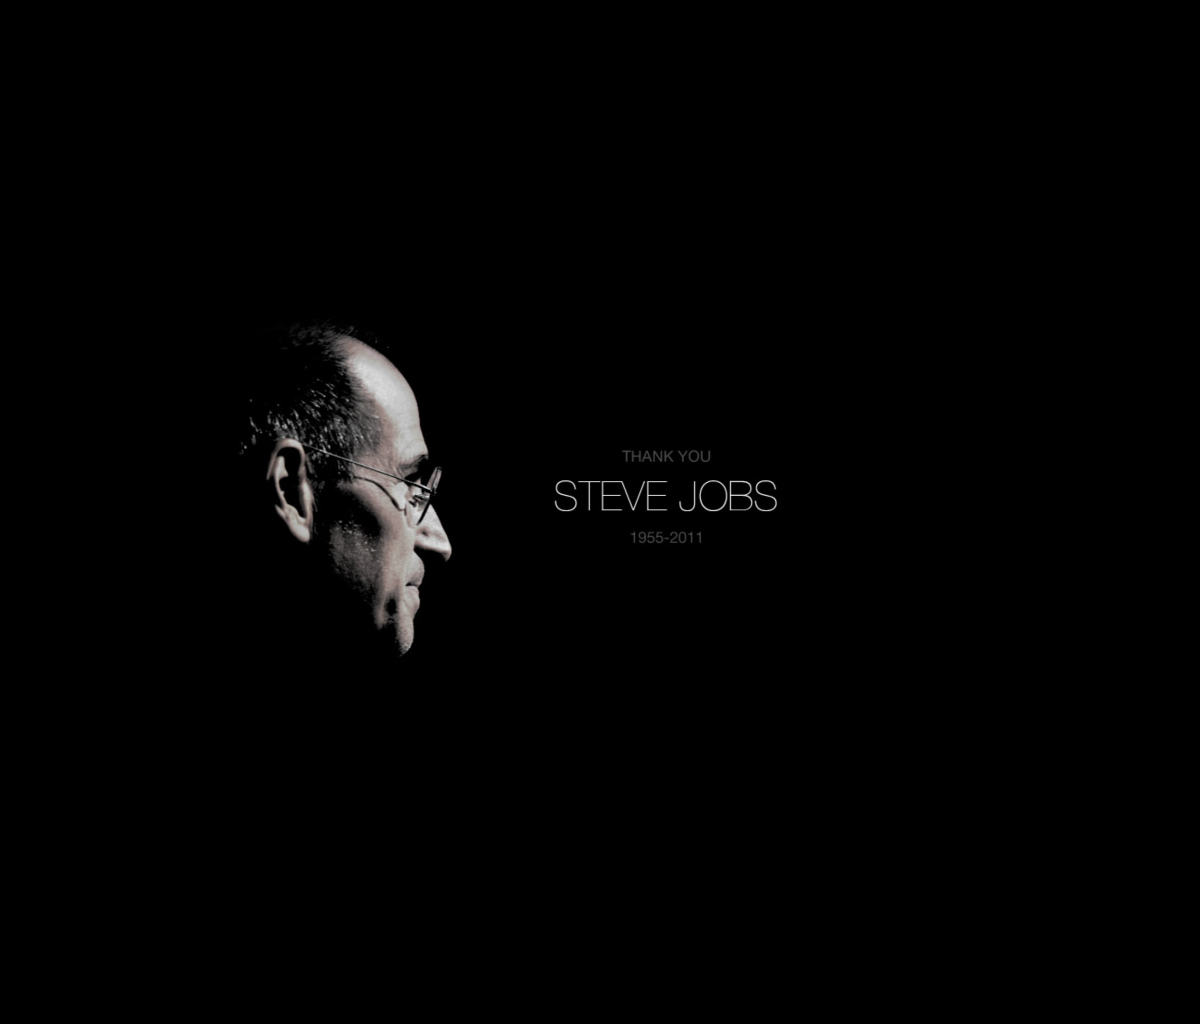 Thank you Steve Jobs wallpaper 1200x1024